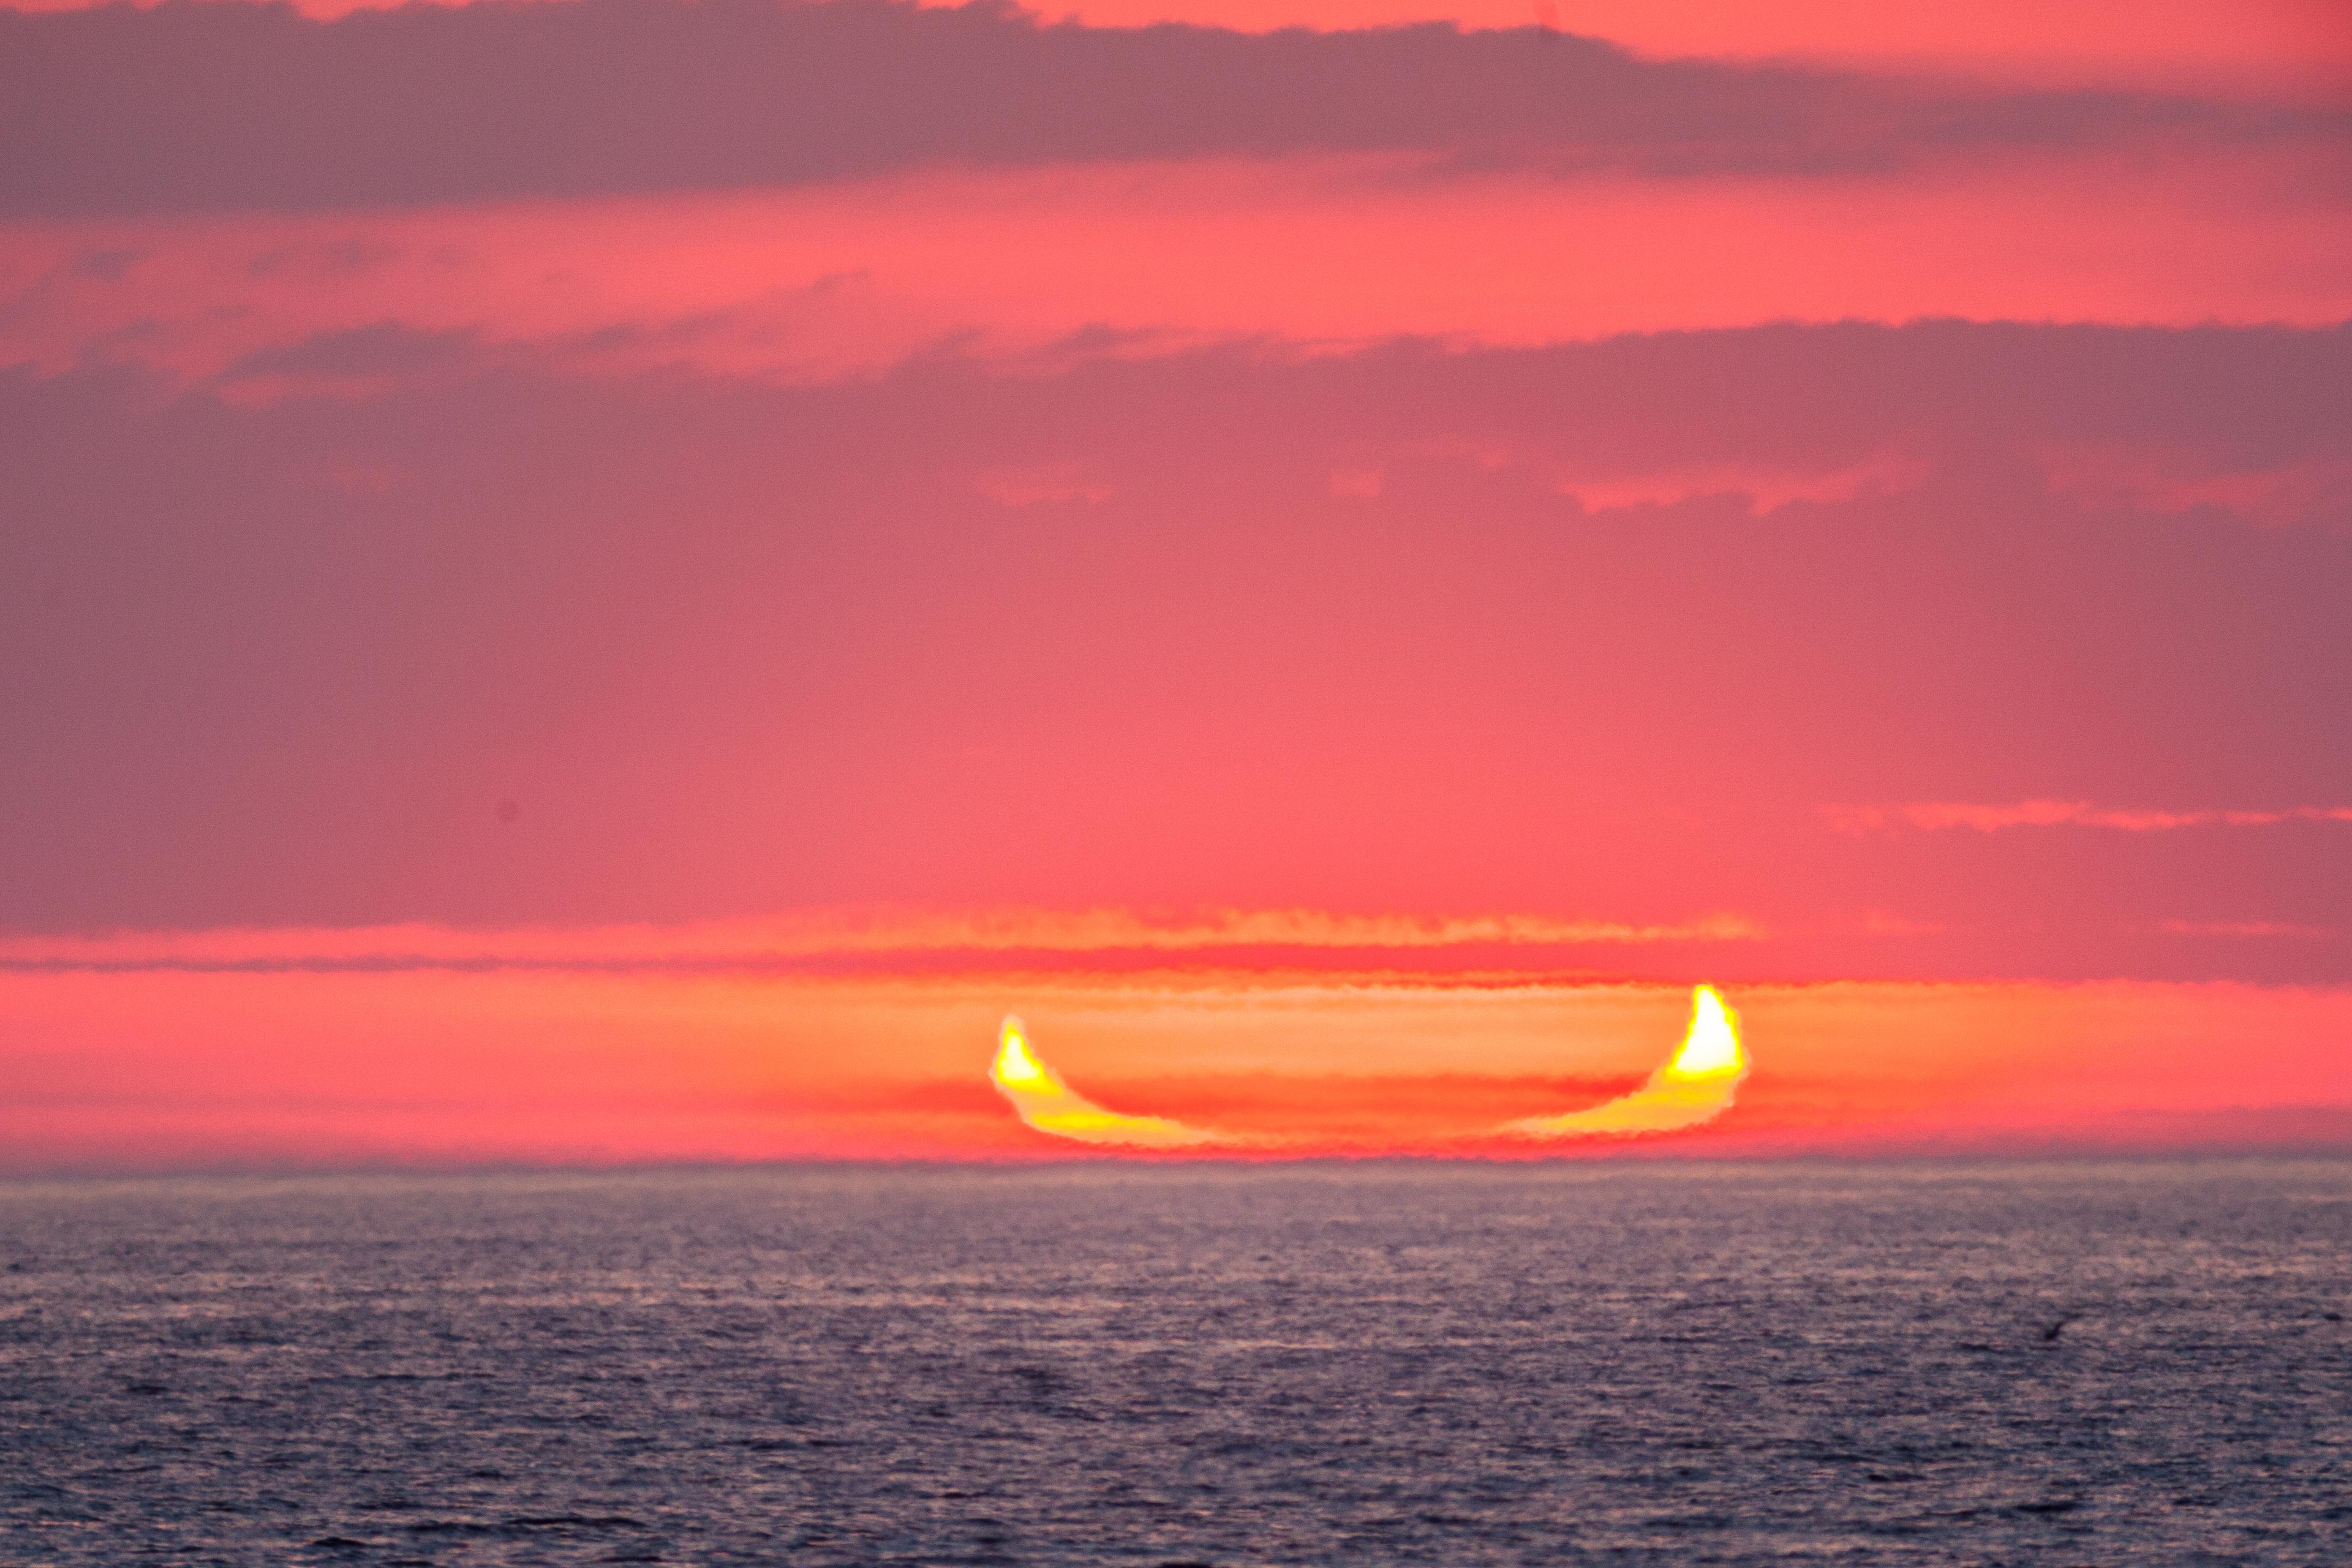 صورة لشروق شمسٍ مكسوفة جزئيّاً عند الأفق على البحر، حيث تظهر كهلالٍ مفتوح باتّجاه الأعلى يمكن تشبيهه بقارب أو قرون.